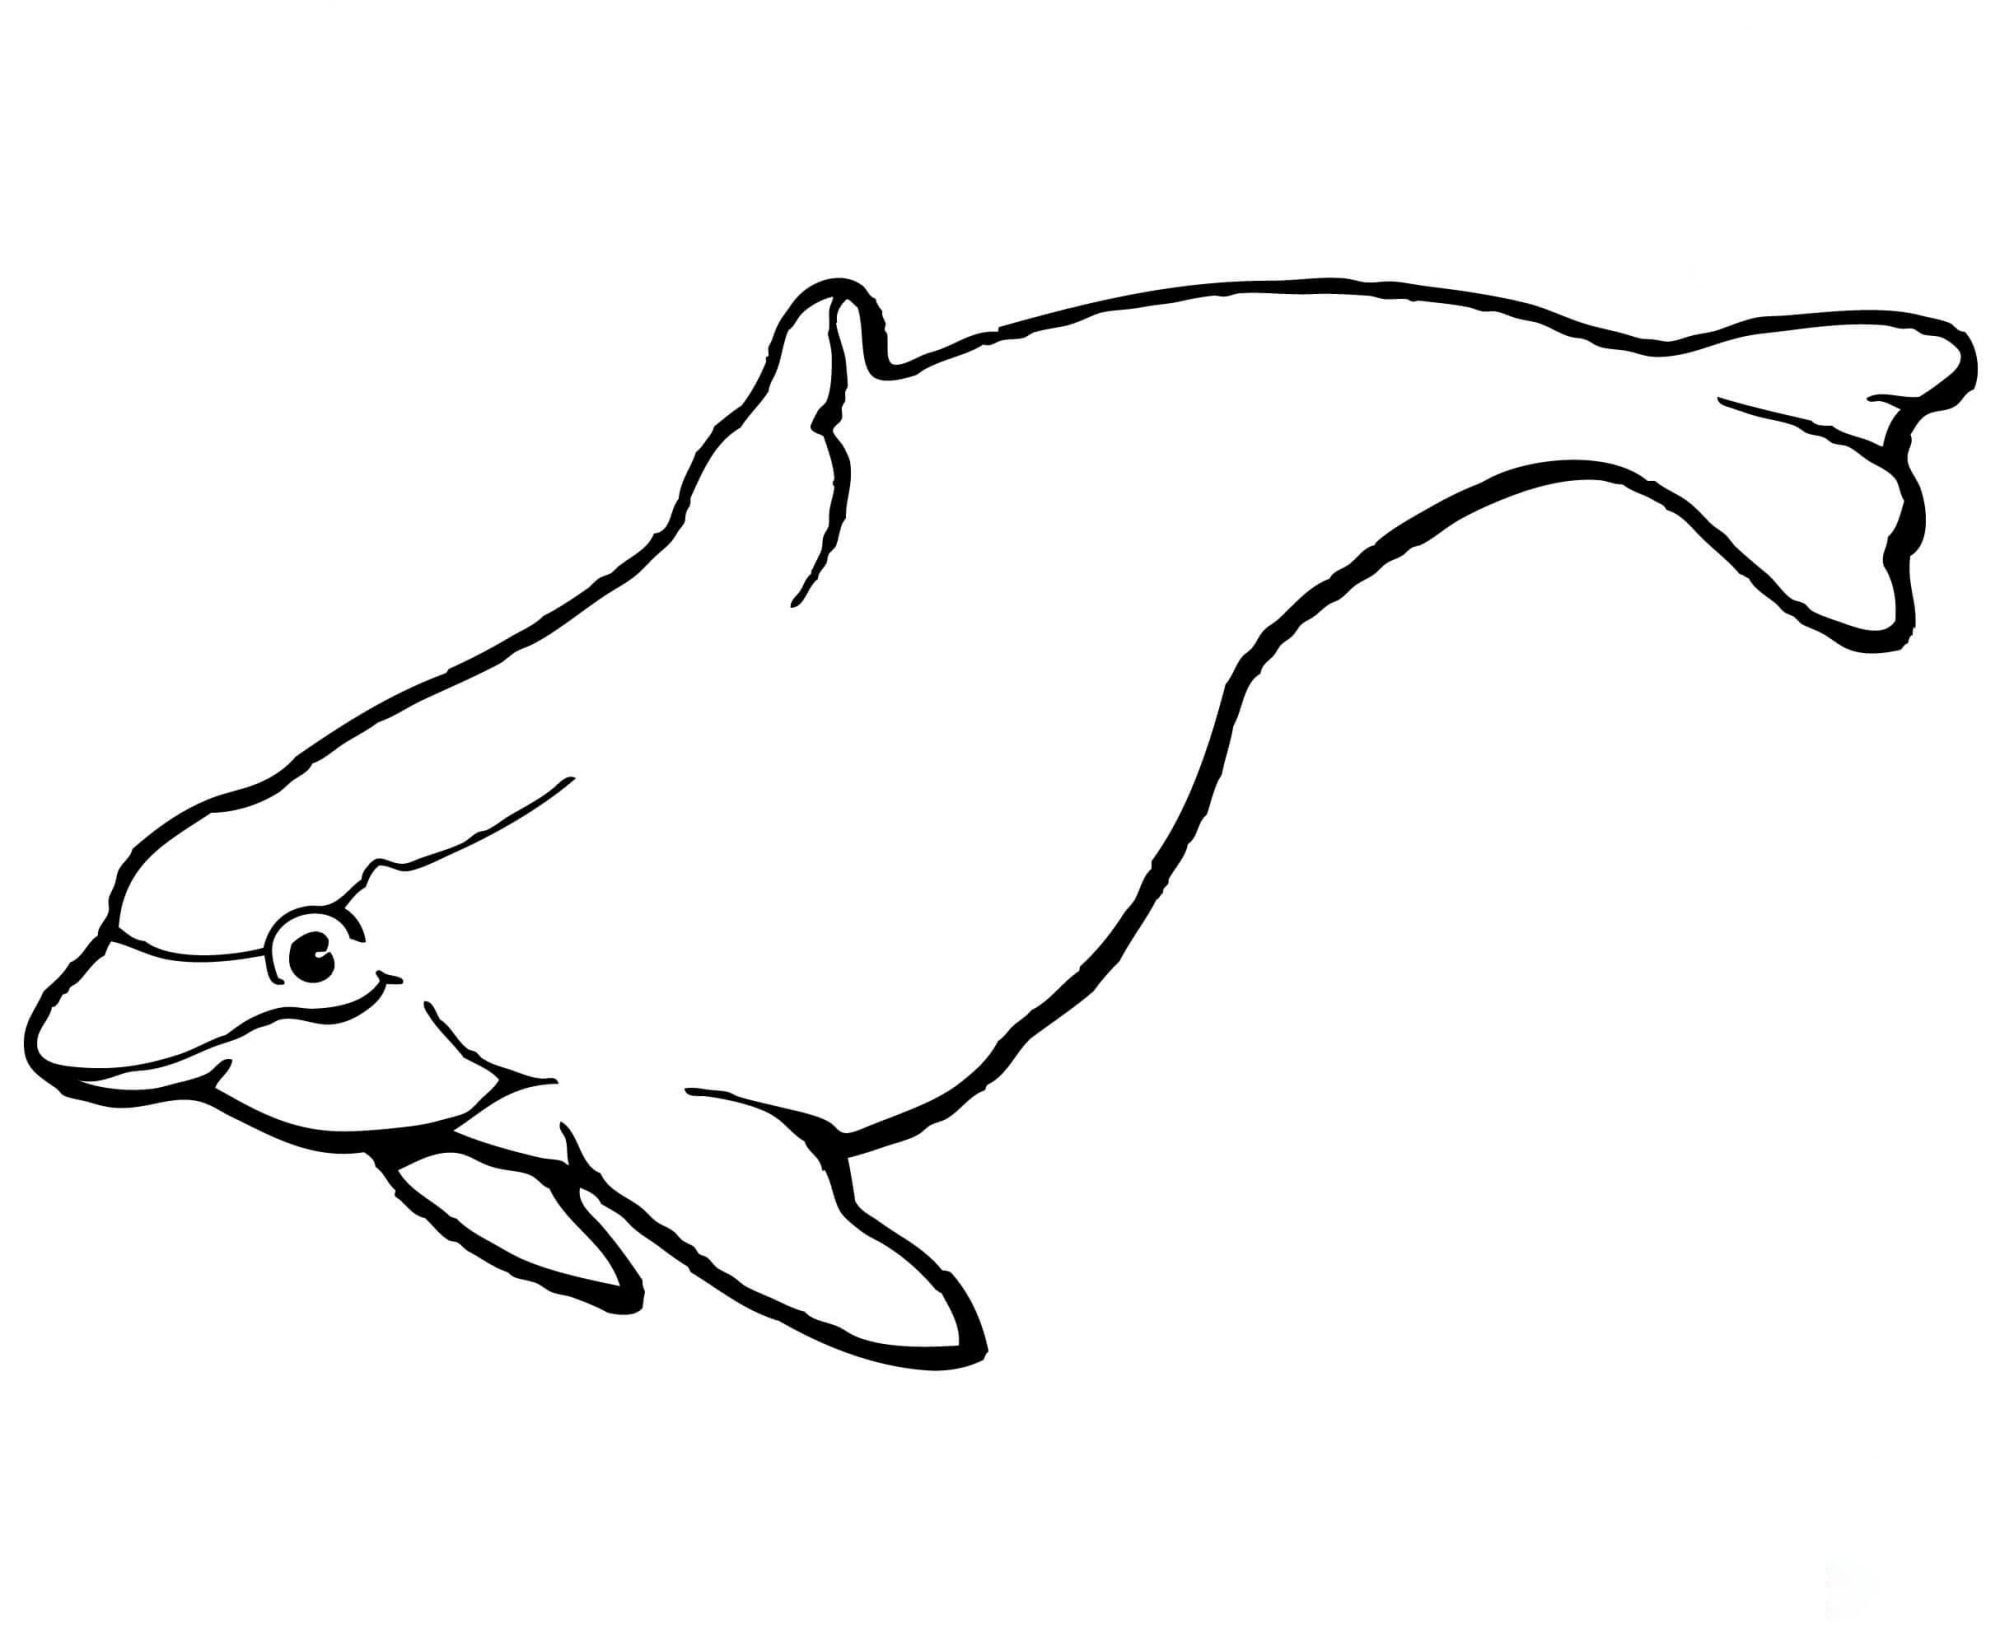 海豚有球状的头部和鱼雷形的身体，来自海豚